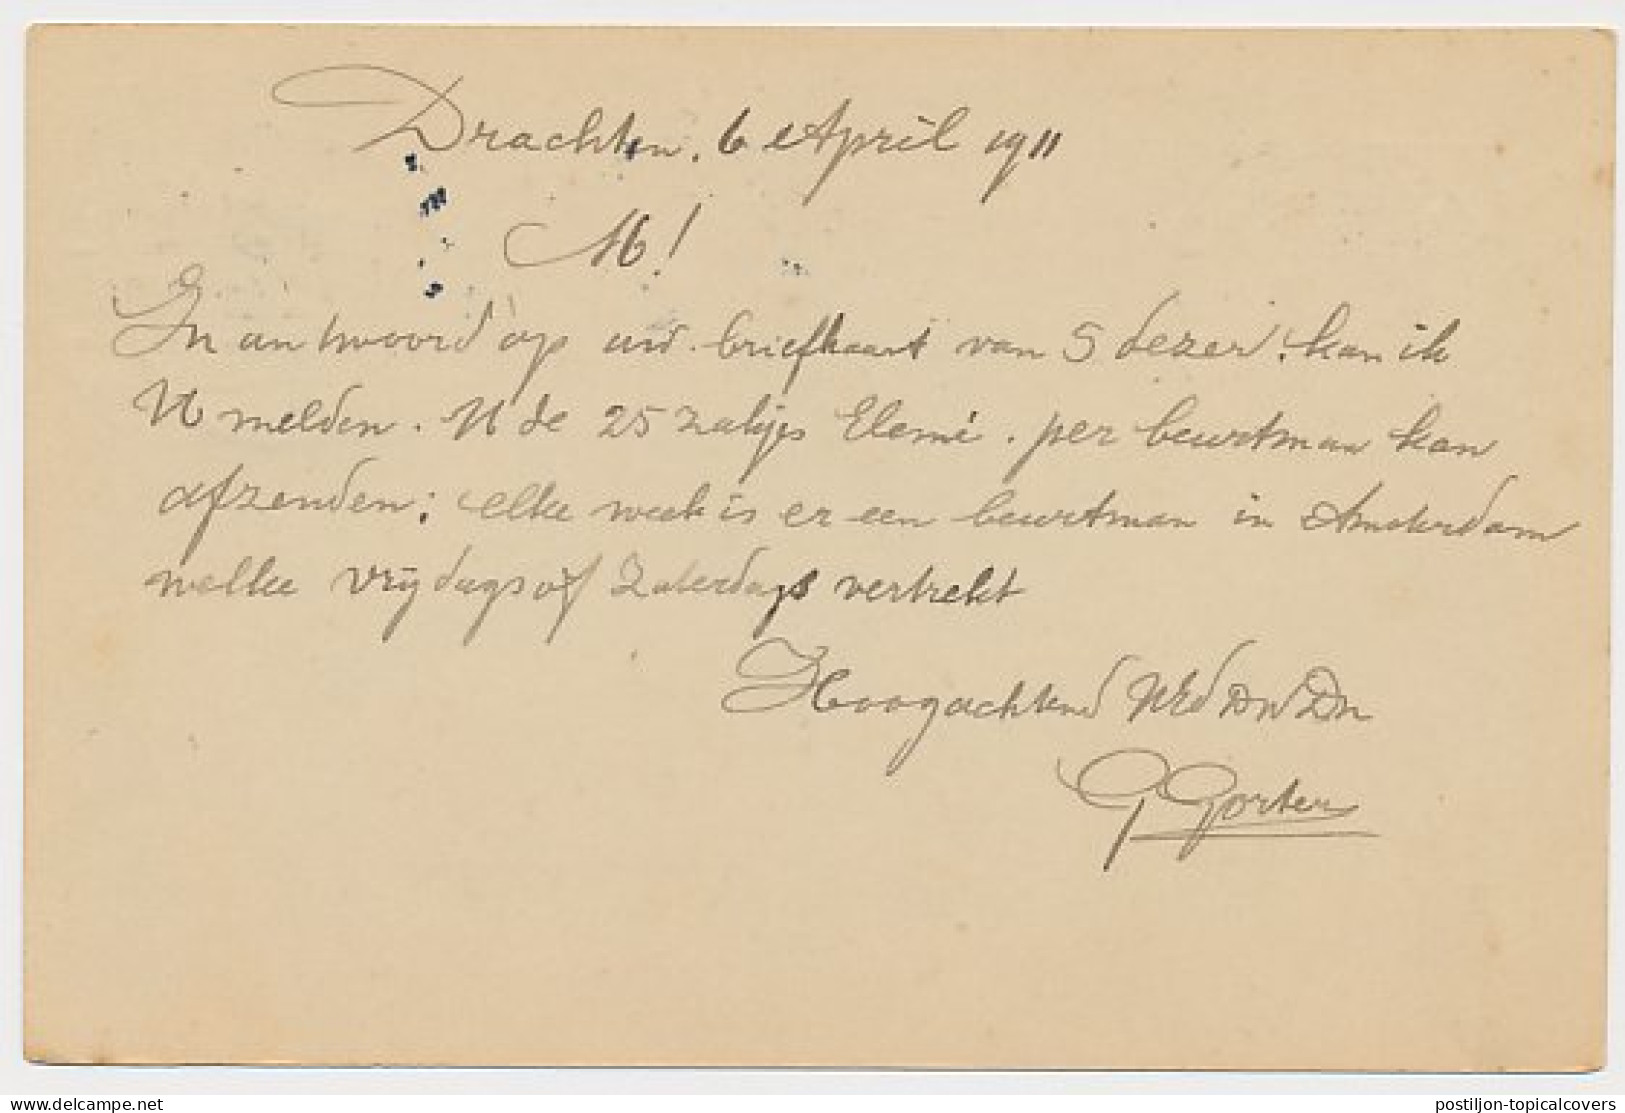 Firma Briefkaart Drachten 1911 - G. Gorter - Non Classés